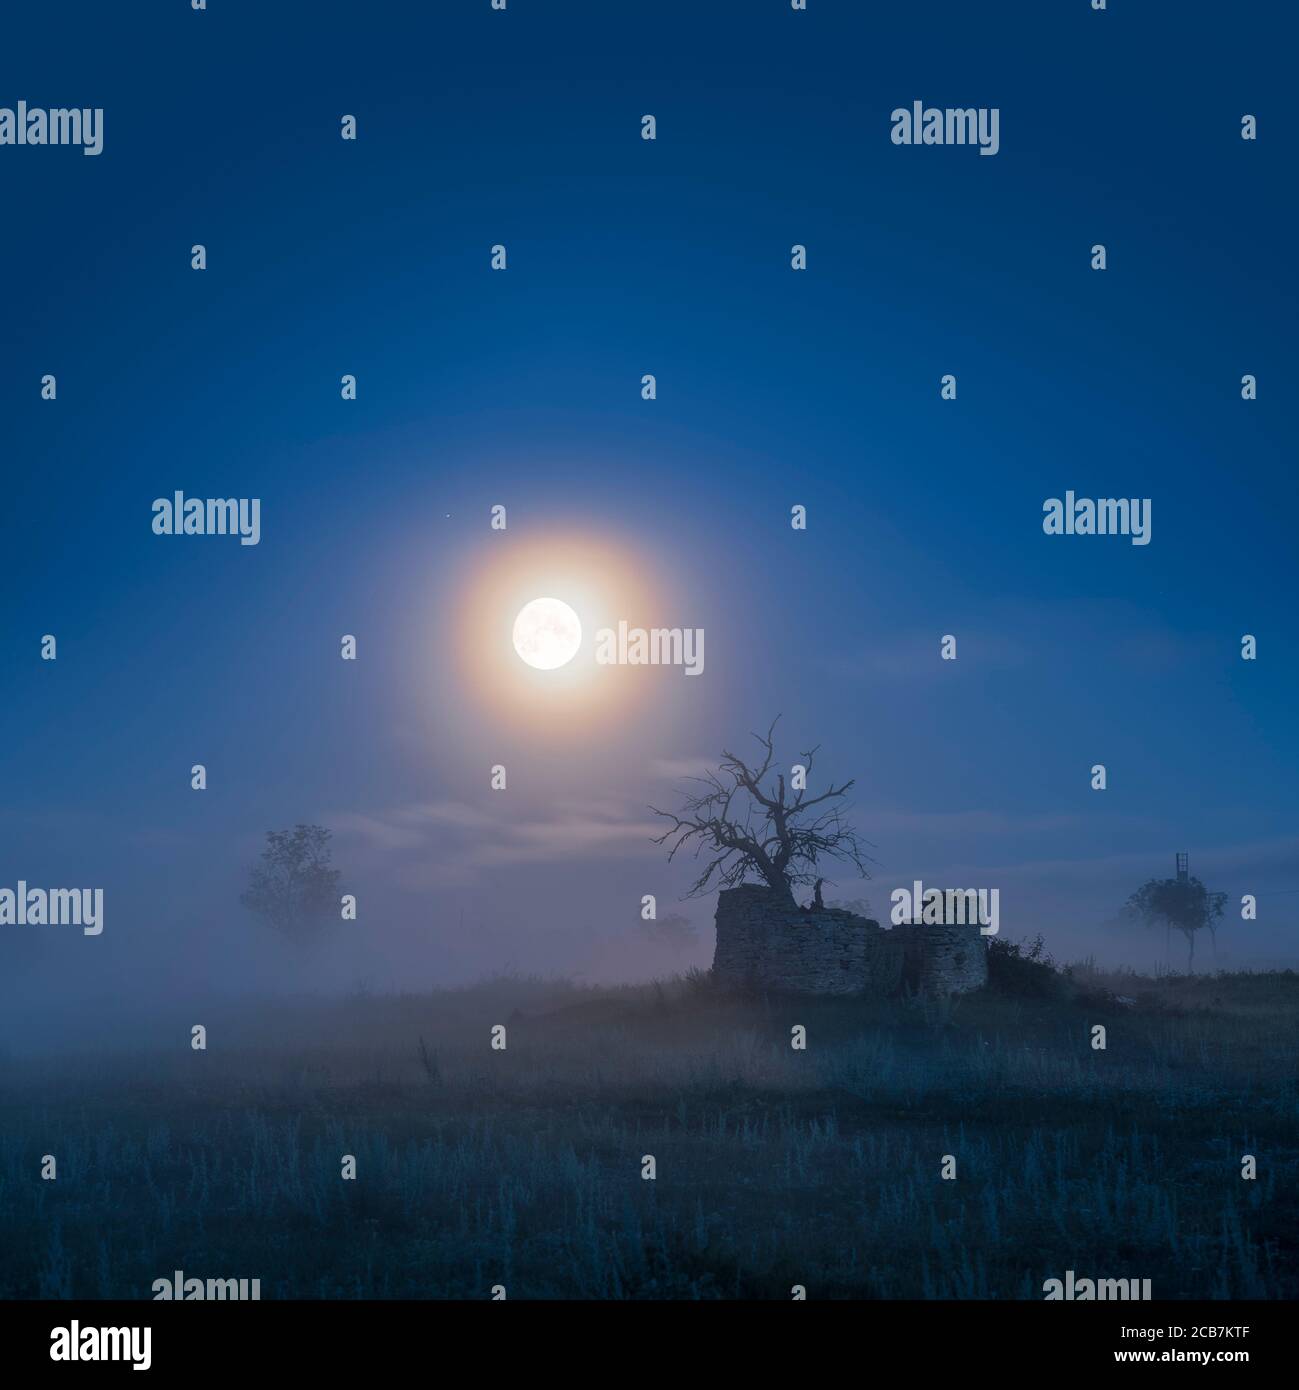 Pleine lune clair de lune sur arbre mort à l'intérieur des ruines d'un vieux moulin à vent dans le paysage rural et le brouillard, Gotland, Suède, Scandinavie. Banque D'Images